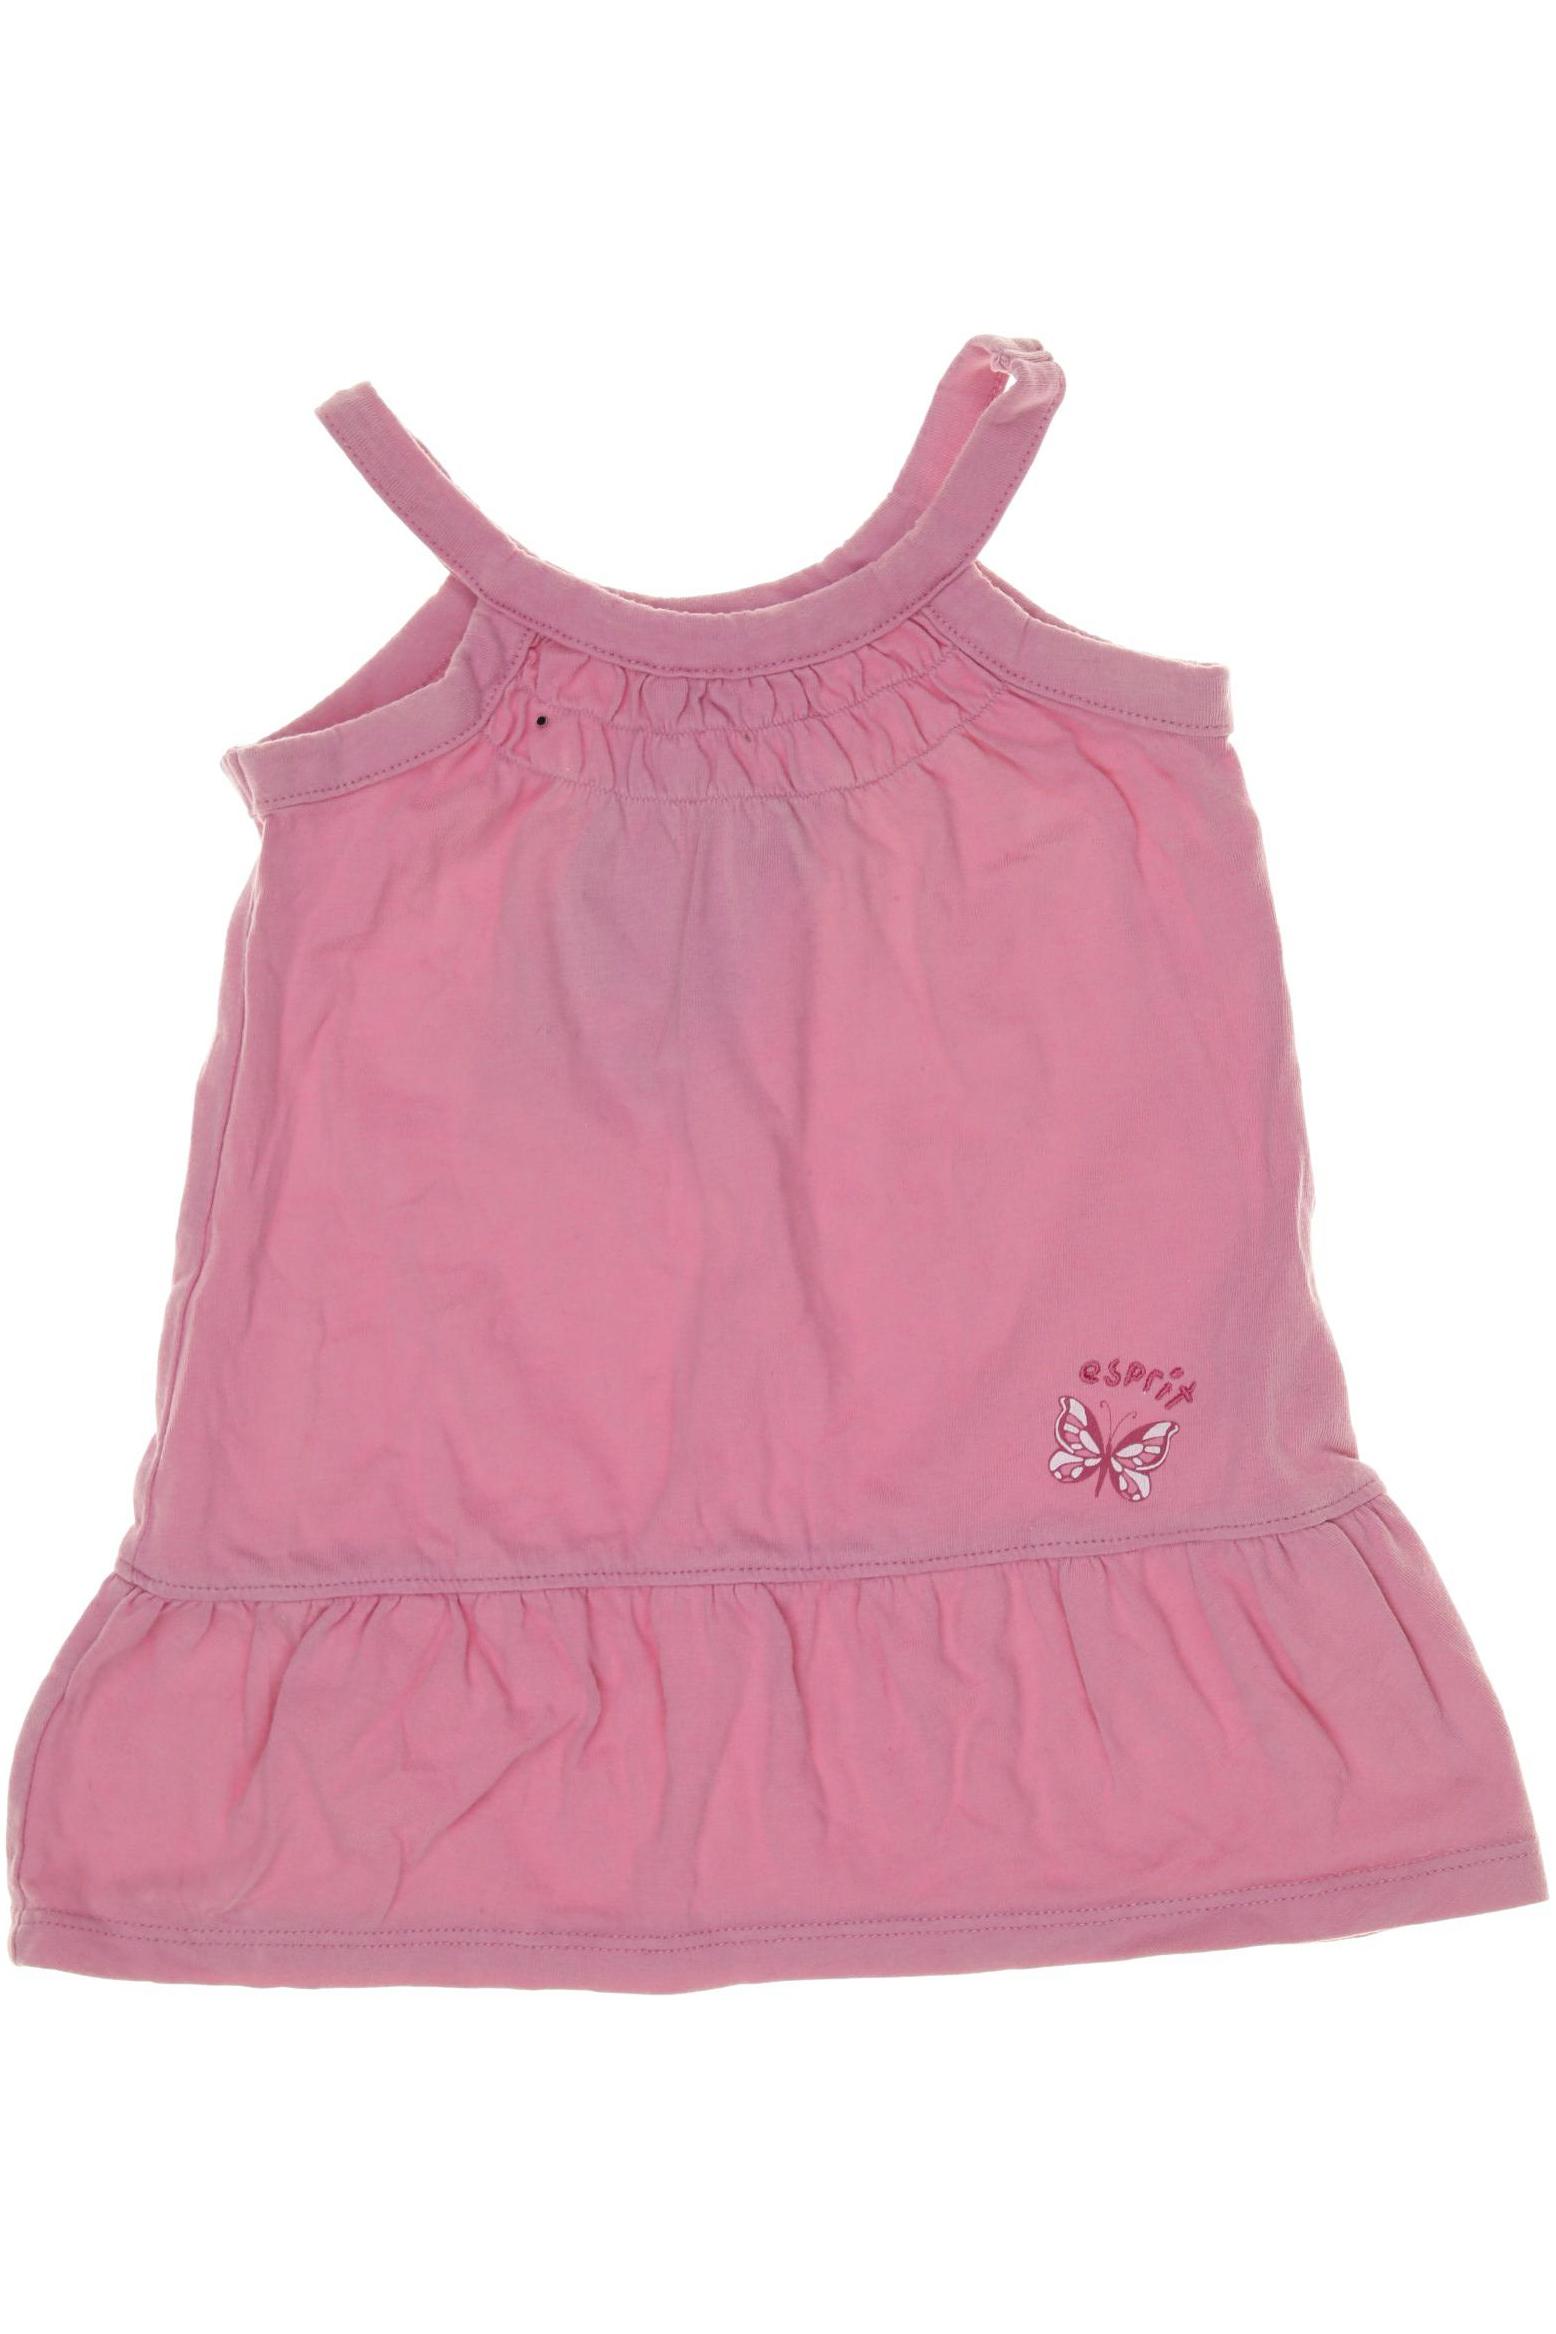 Esprit Damen Kleid, pink, Gr. 62 von Esprit